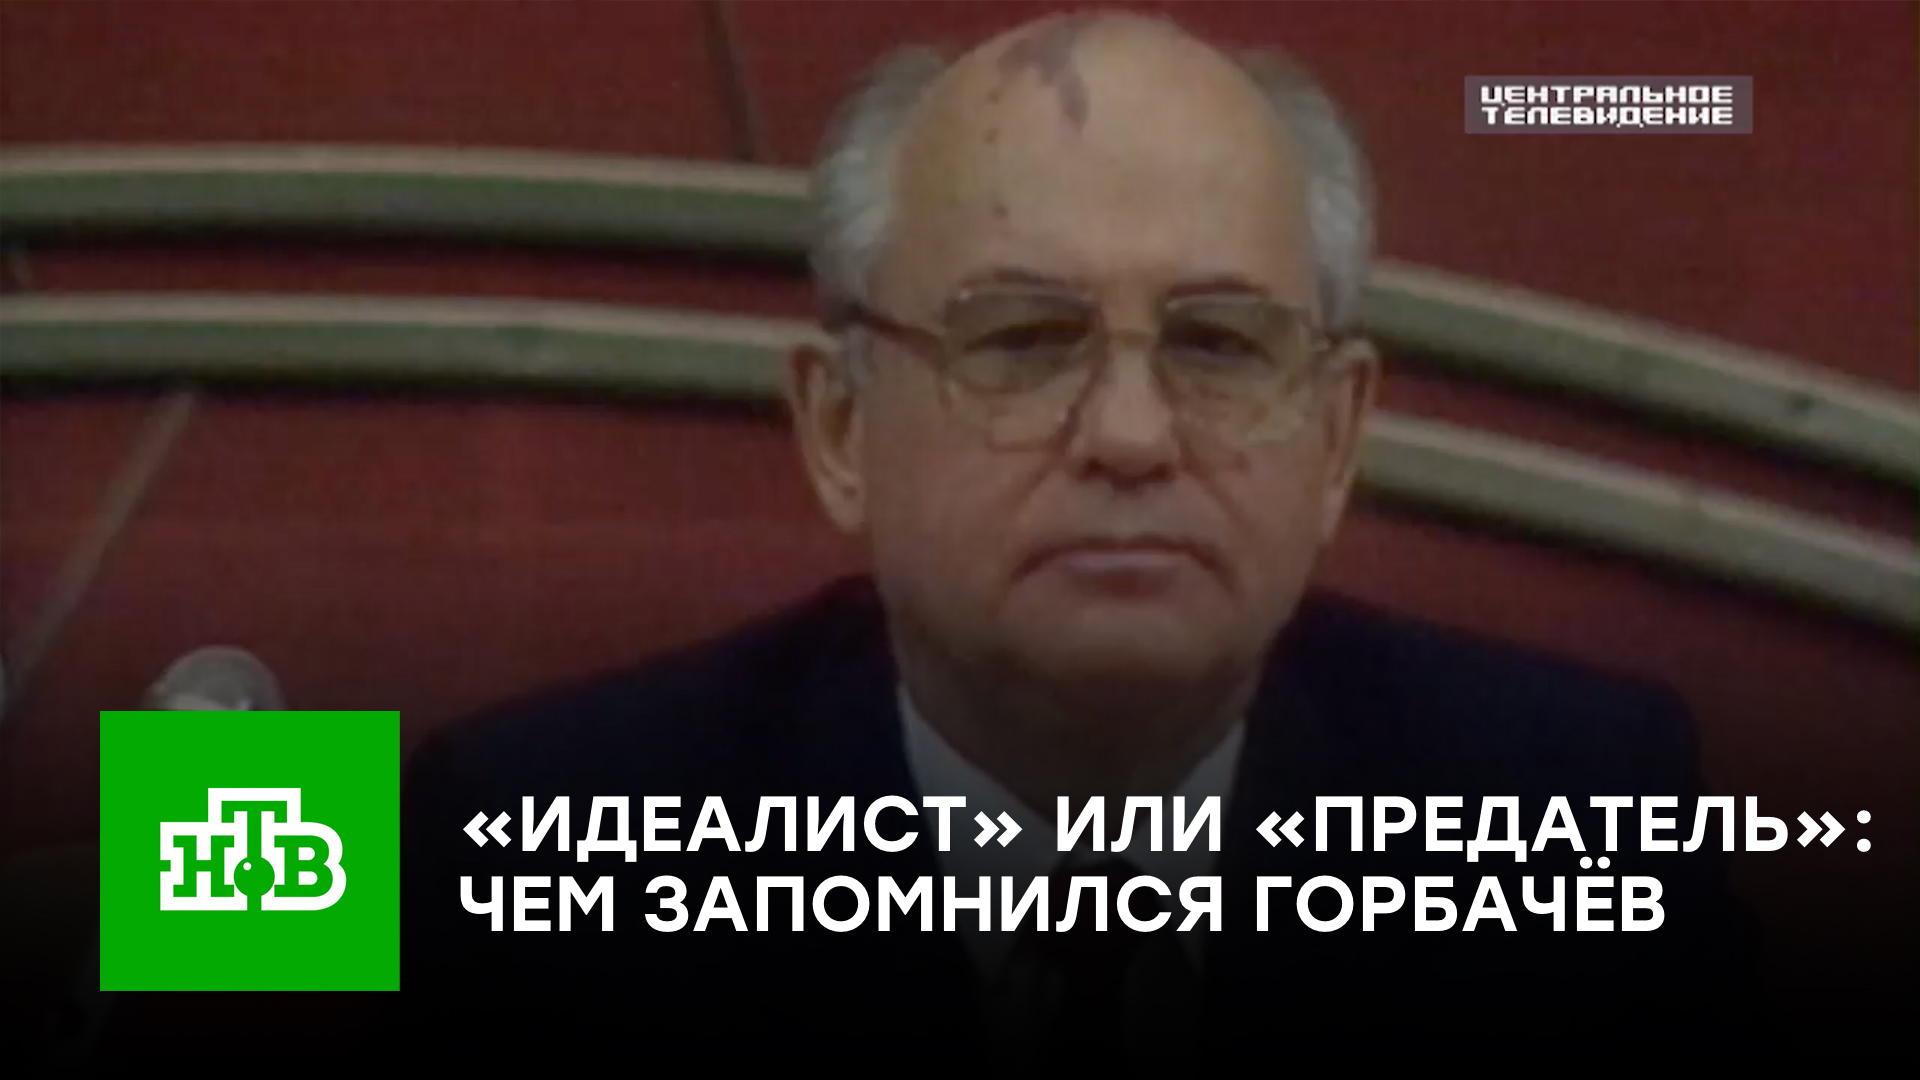 «Идеалист» или «предатель»: чем запомнился Михаил Горбачёв